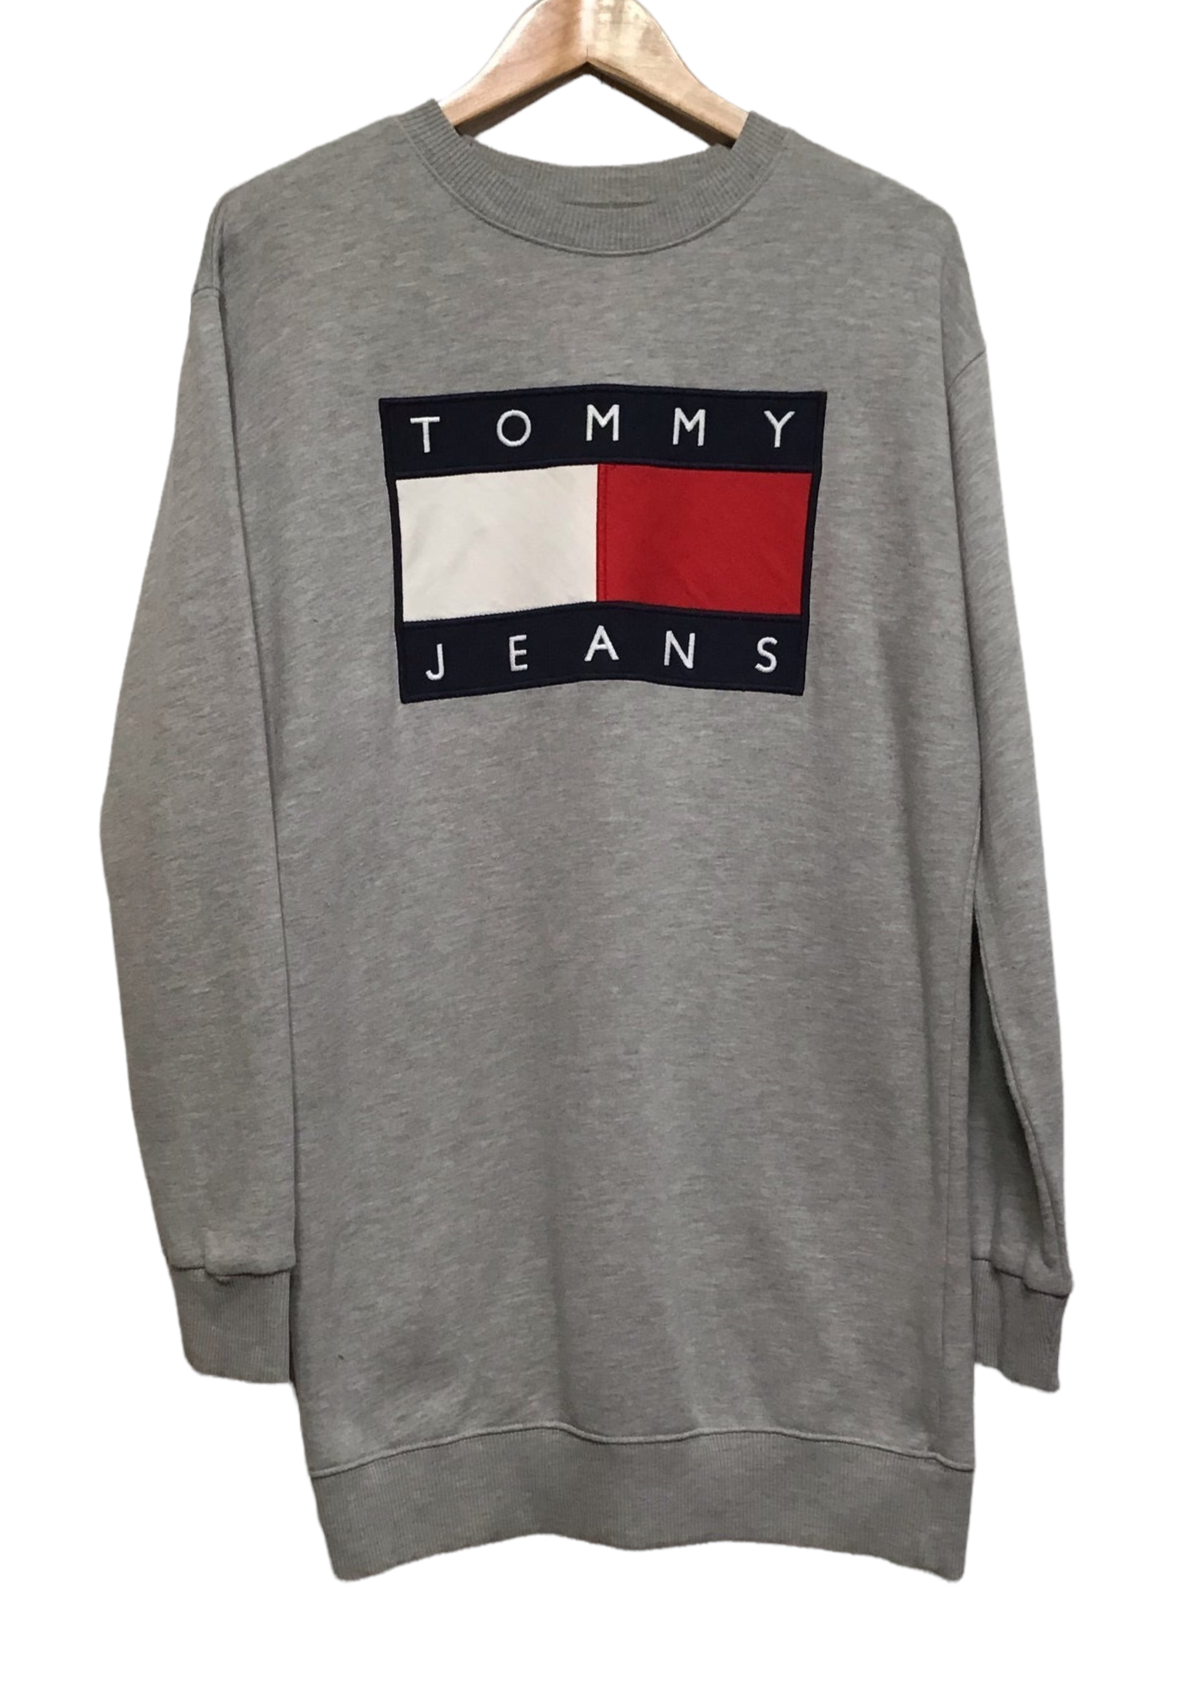 Tommy Hilfiger Sweatshirt (XL) – 68